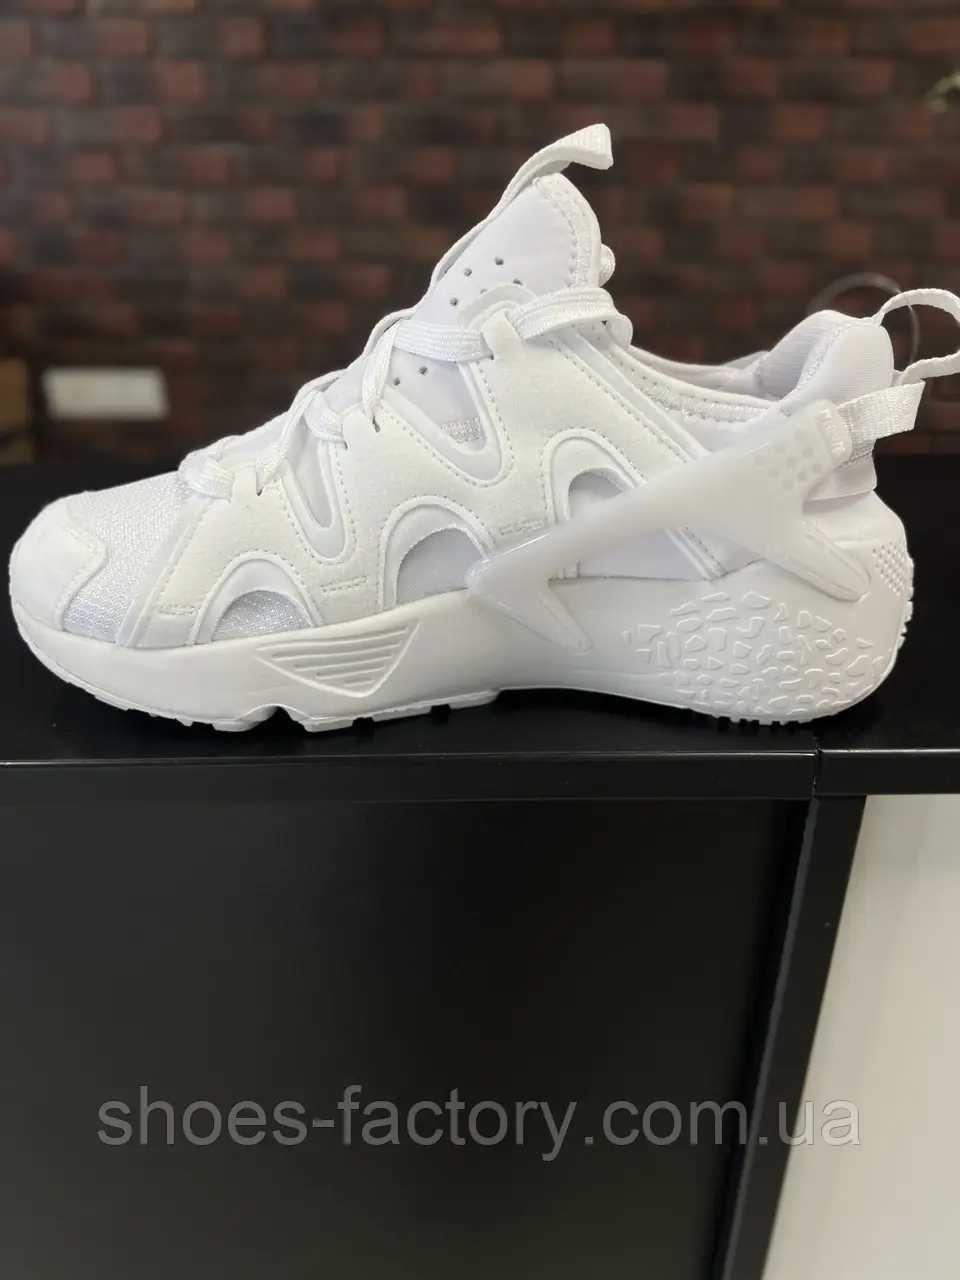 Чоловічі білі кросівки Nike Air Huarache Craft код 8031-106